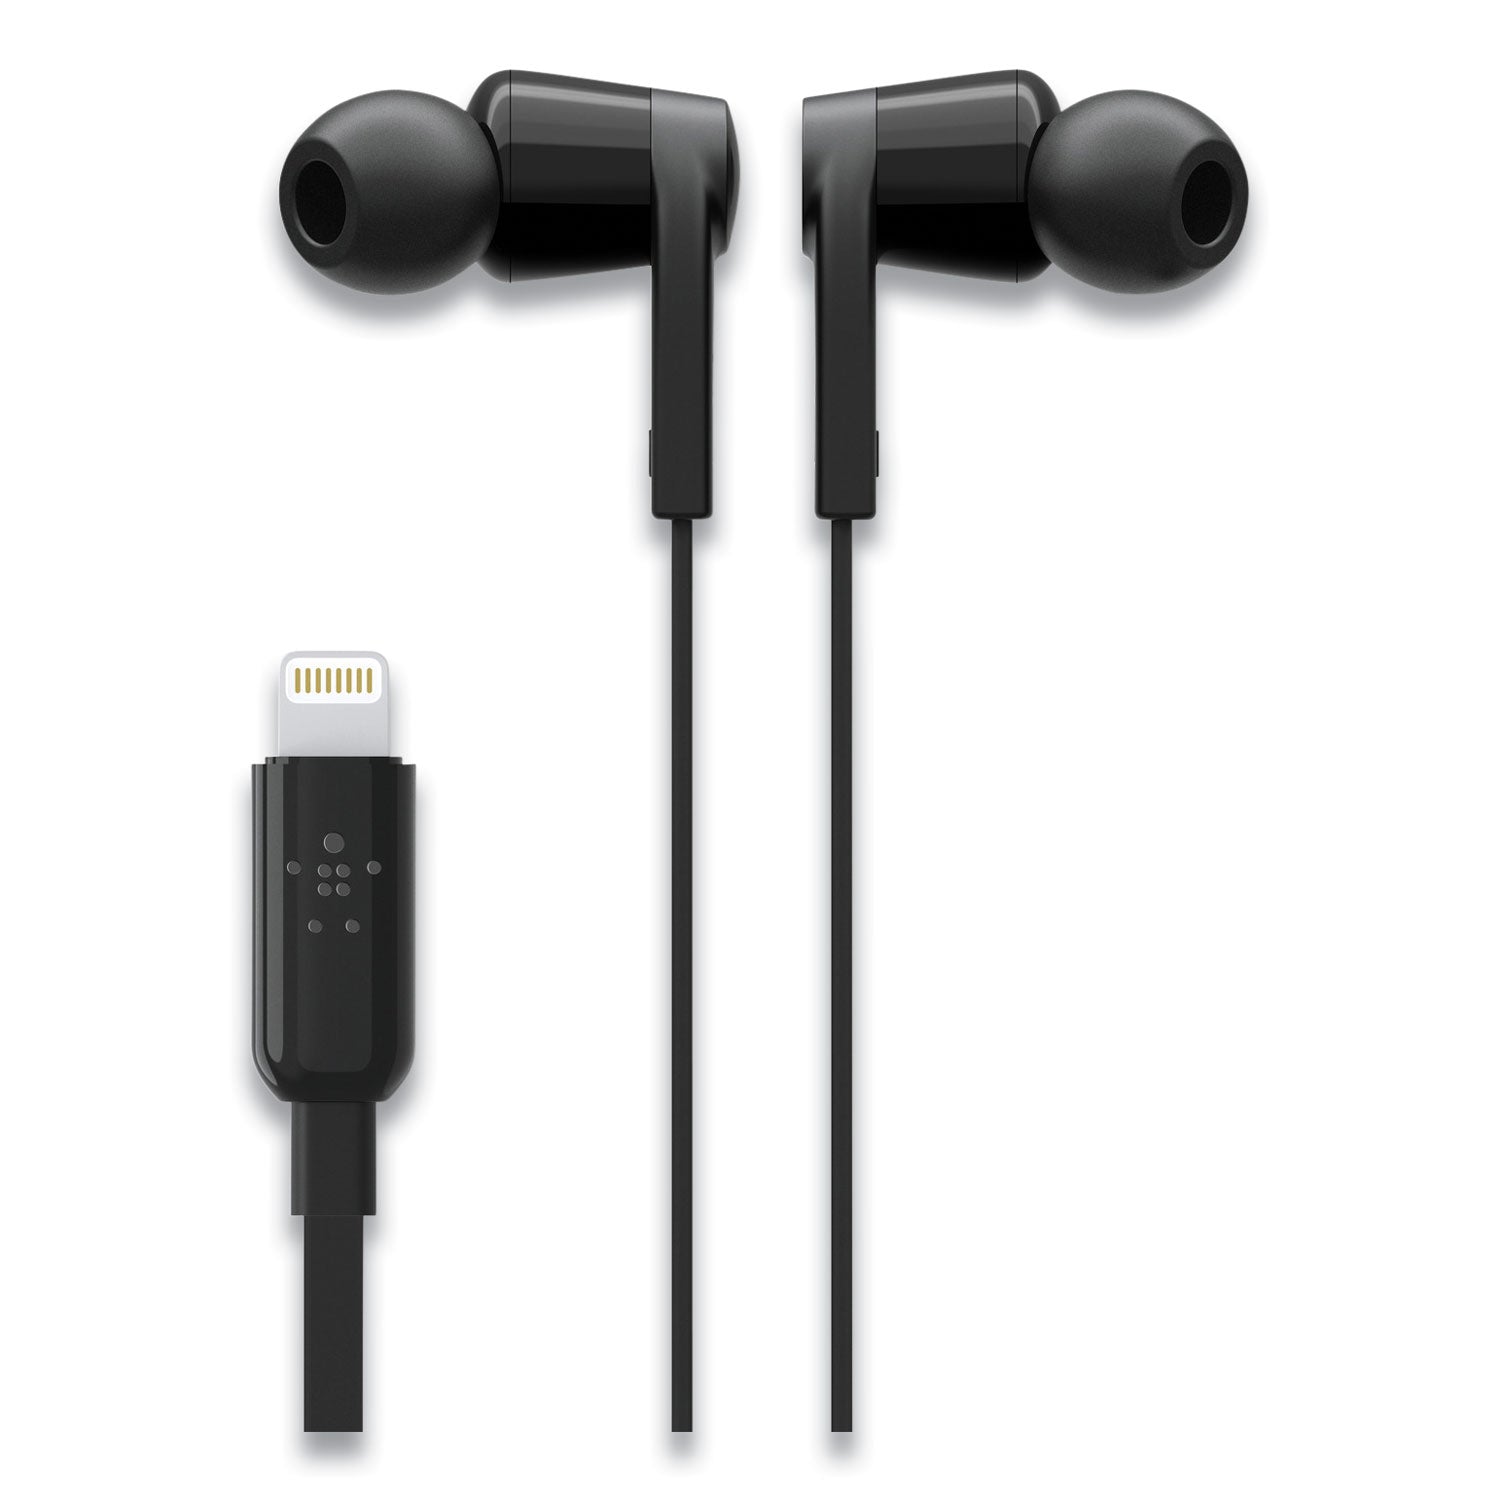 soundform-headphones-with-lightning-connector-44-cord-black_blkg3h0001btblk - 2